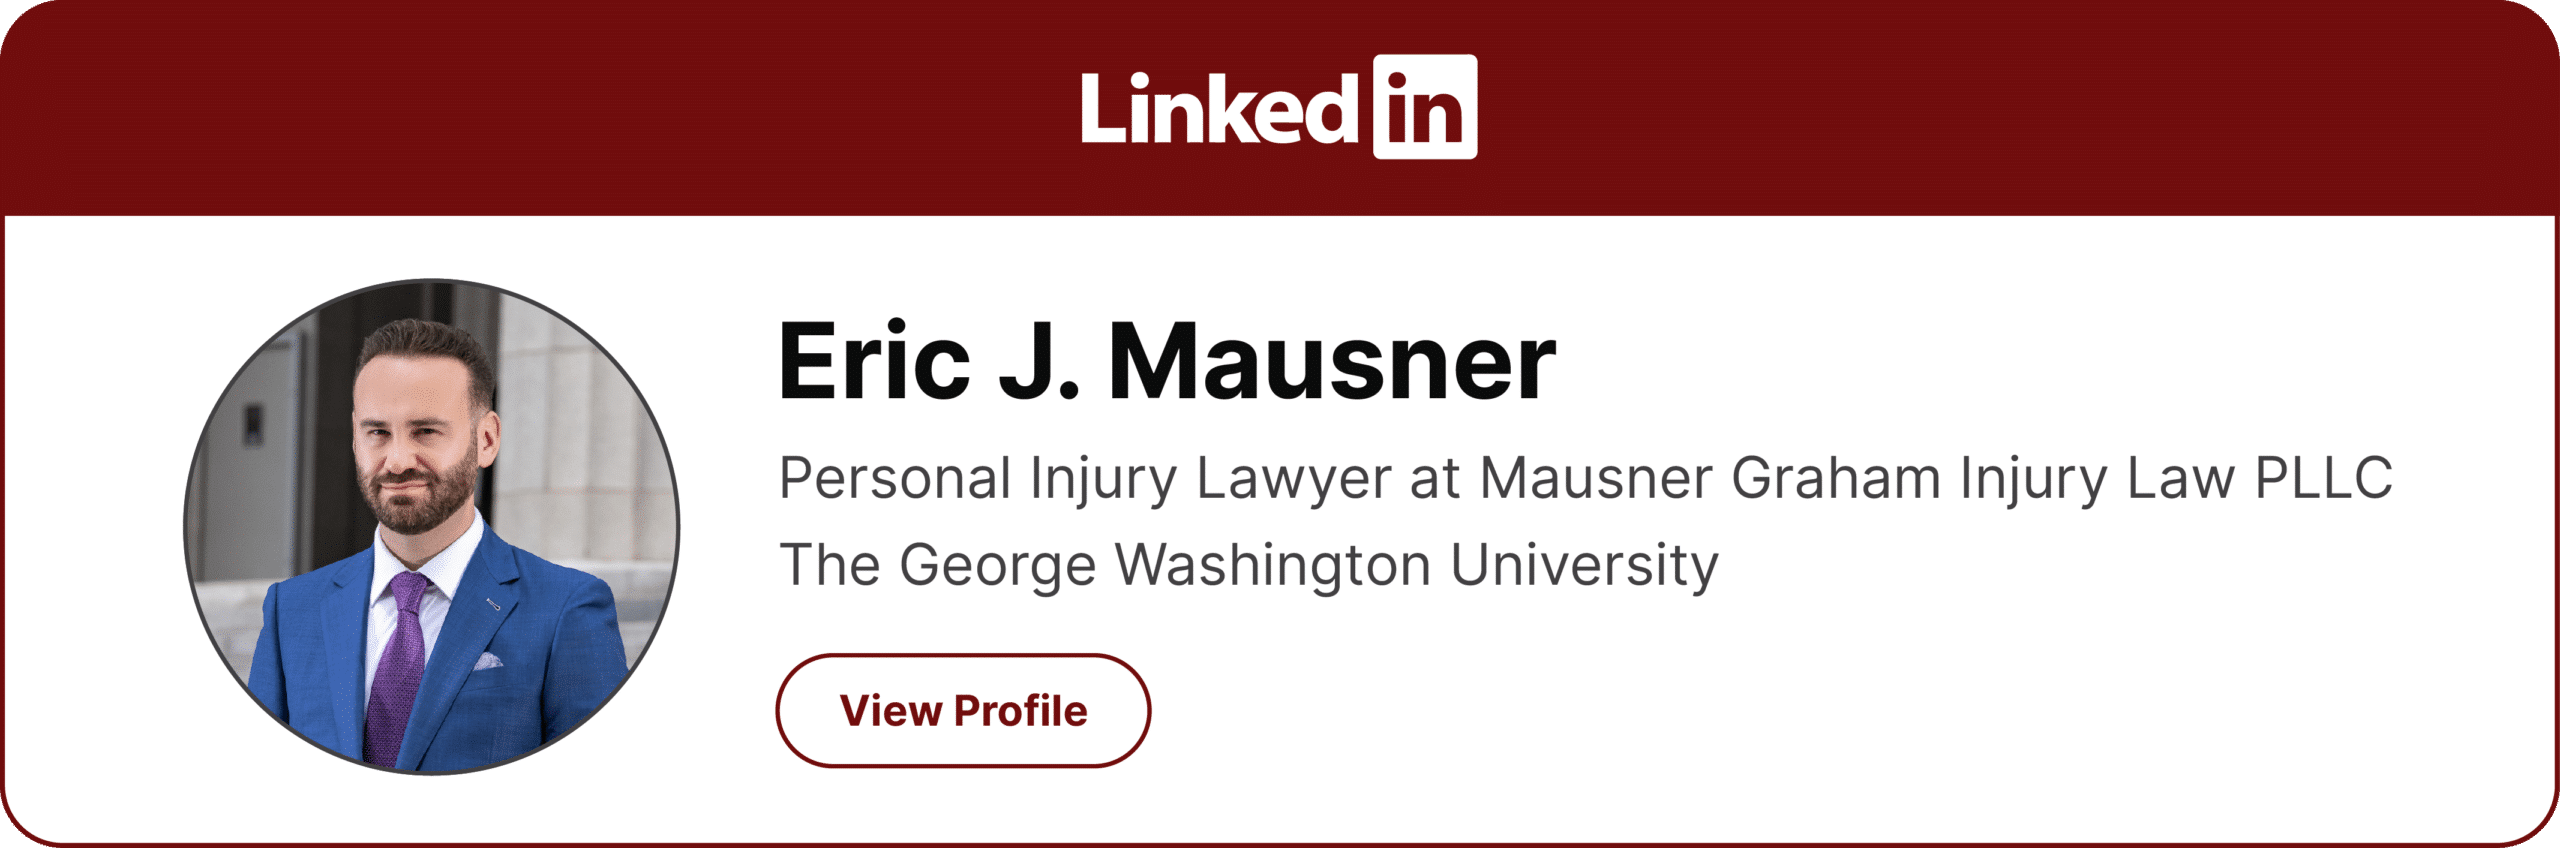 Find Eric J Mausner on LinkedIn